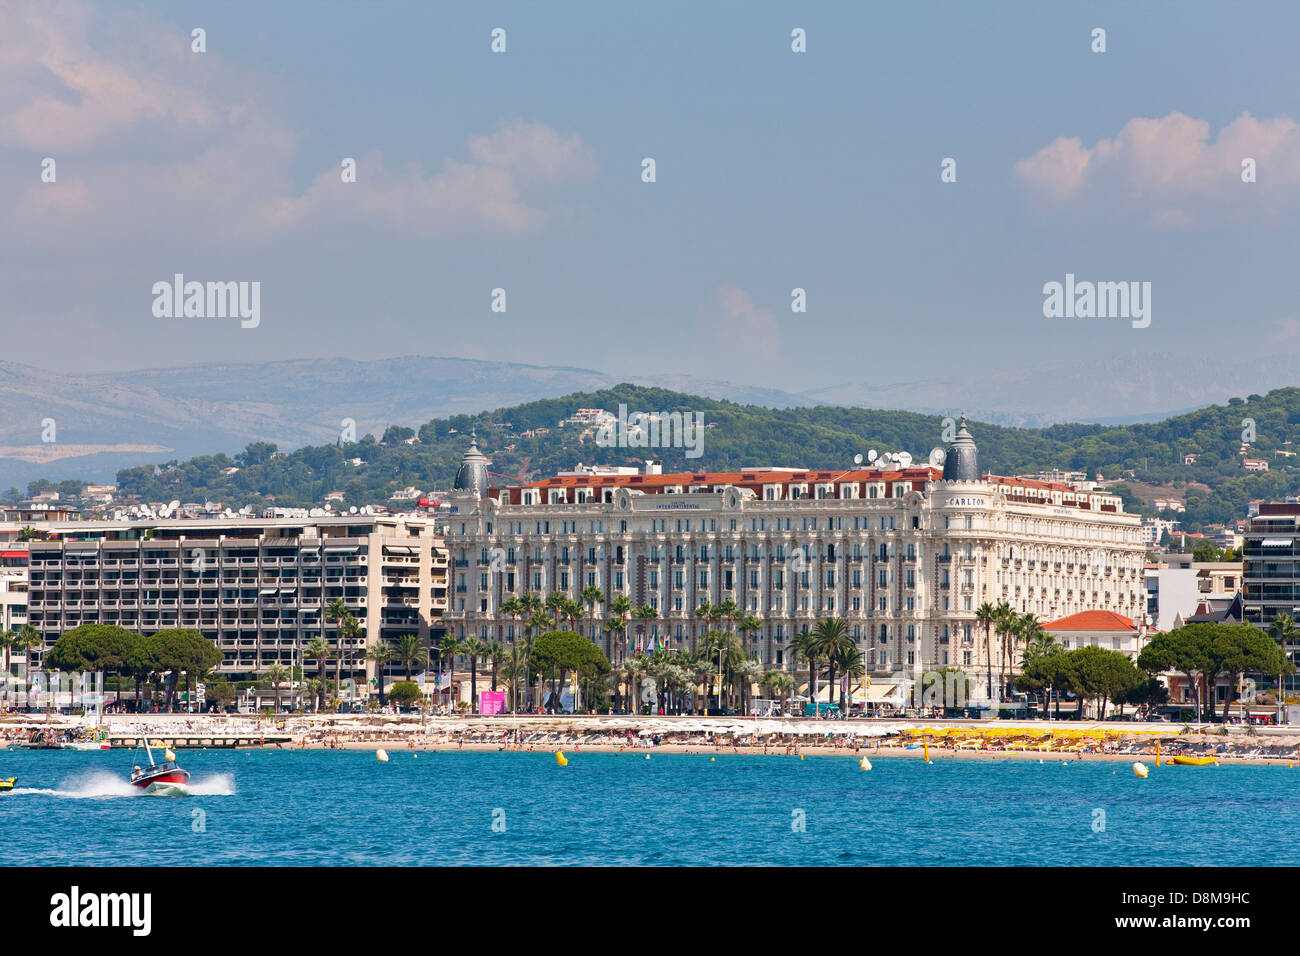 The famous hotel Carlton, Boulevard de la Croisette along the waterfront, Cannes, France Stock Photo